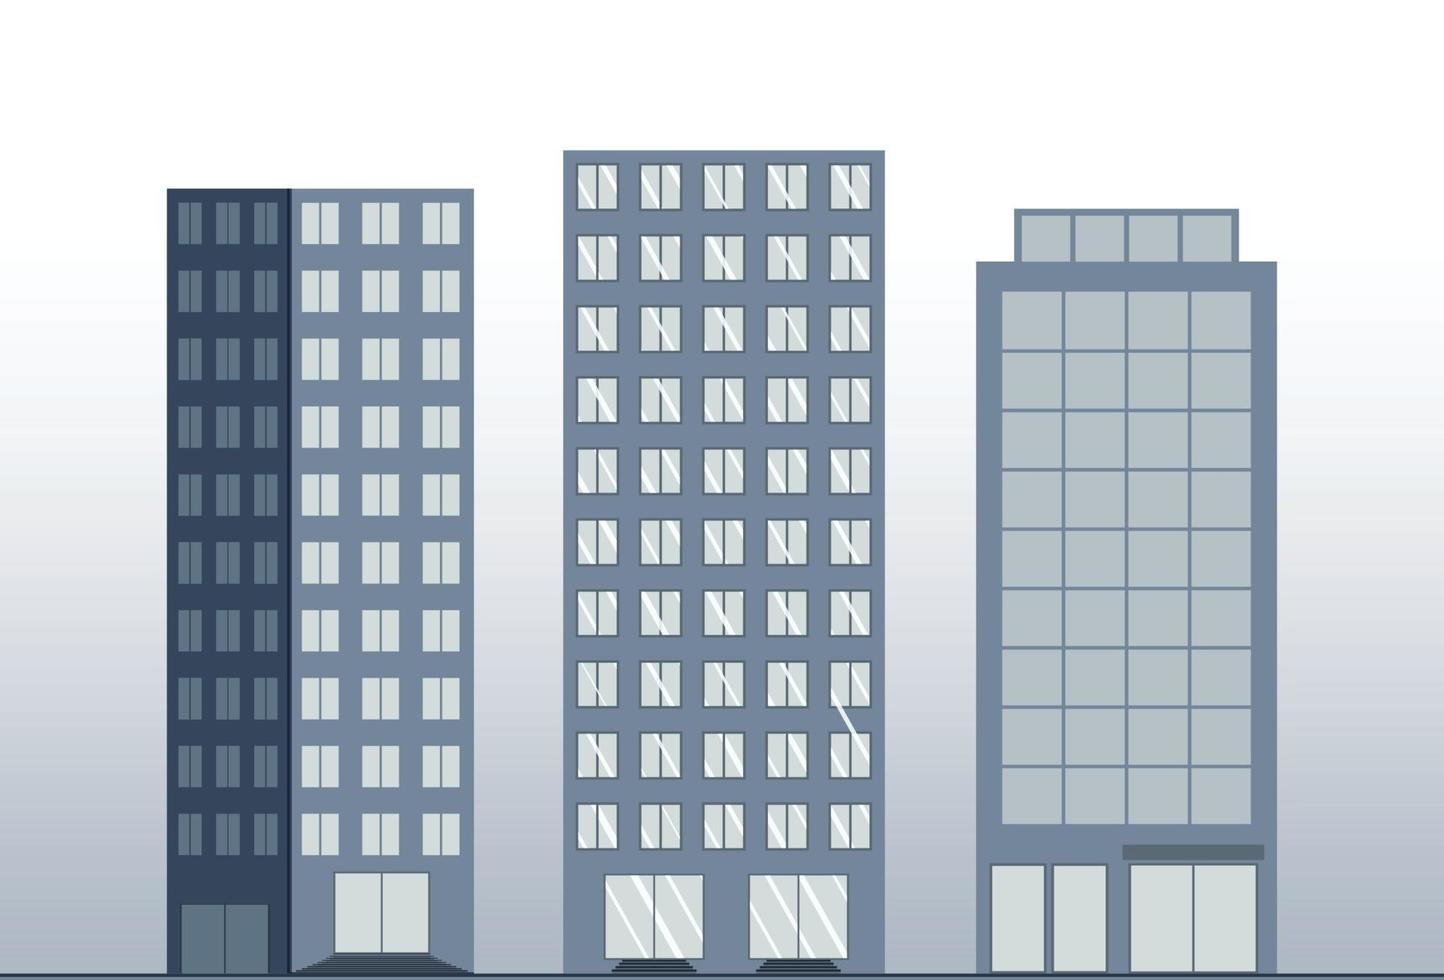 impostato di città Torre edifici illustrazione, grattacielo vero tenuta abitabile edificio silhouette vettore